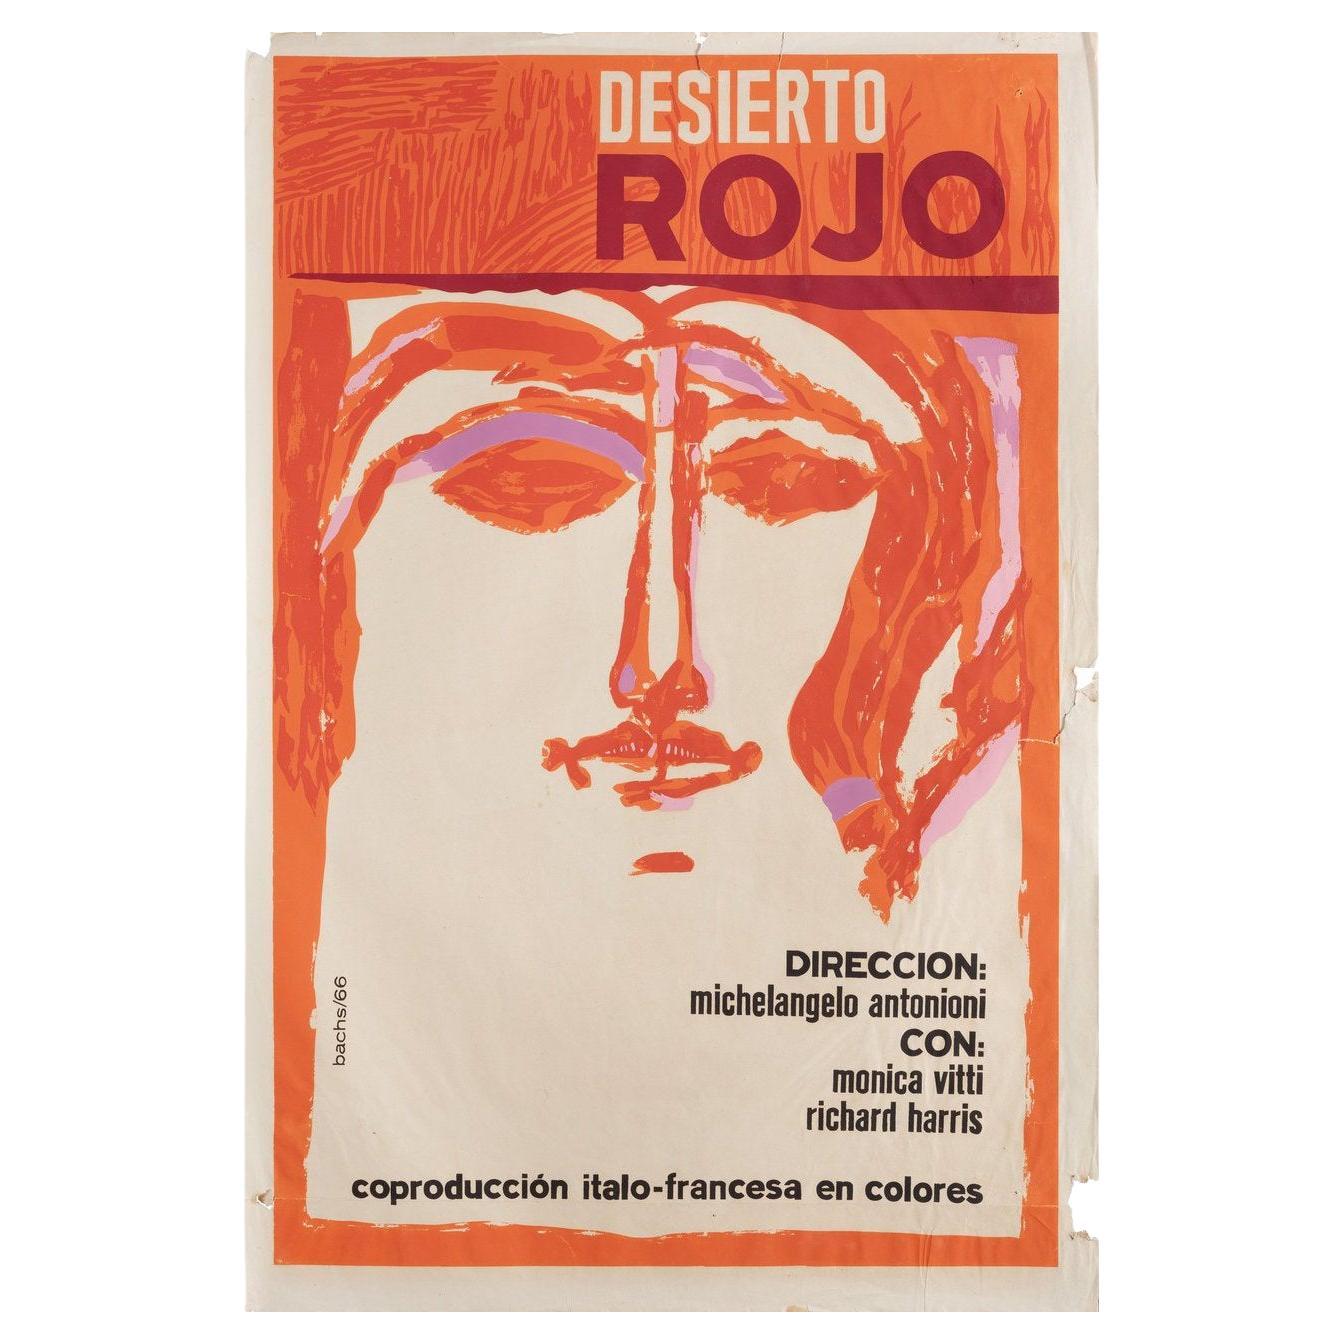 Affiche du film cubain « Le désert rouge », 1966